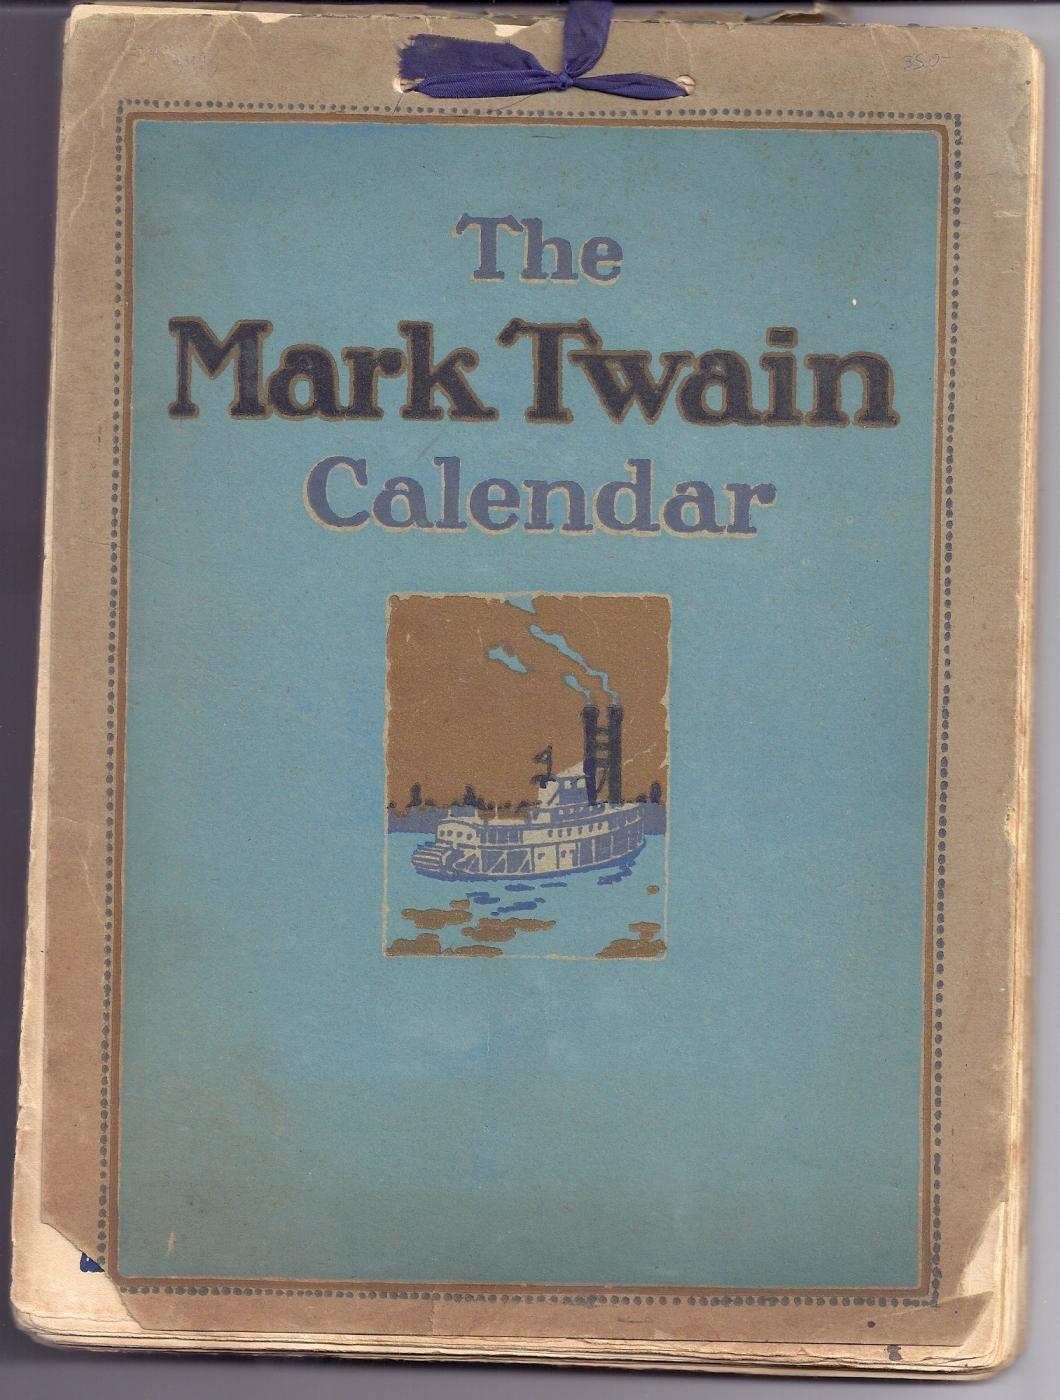 THE MARK TWAIN CALENDAR by TWAIN, Mark [CLEMENS, Samuel] Wraps (1921